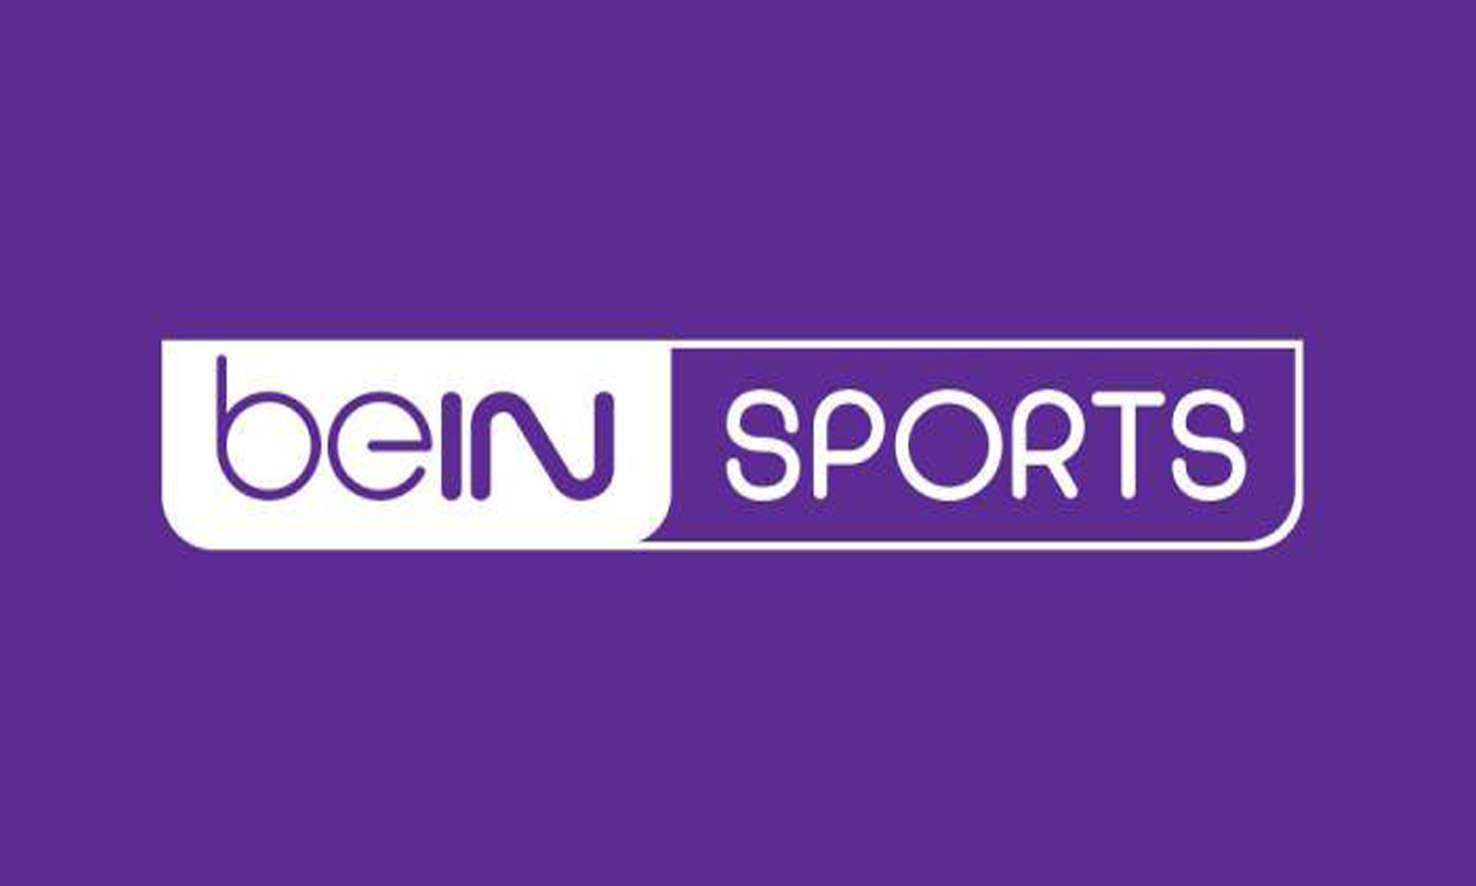 تردد قناة بي إن سبورت الجديد تحديث أغسطس 2019 الناقلة الرسمية للبطولات الرياضية الكبرى عبر القمر الصناعي النايل سات